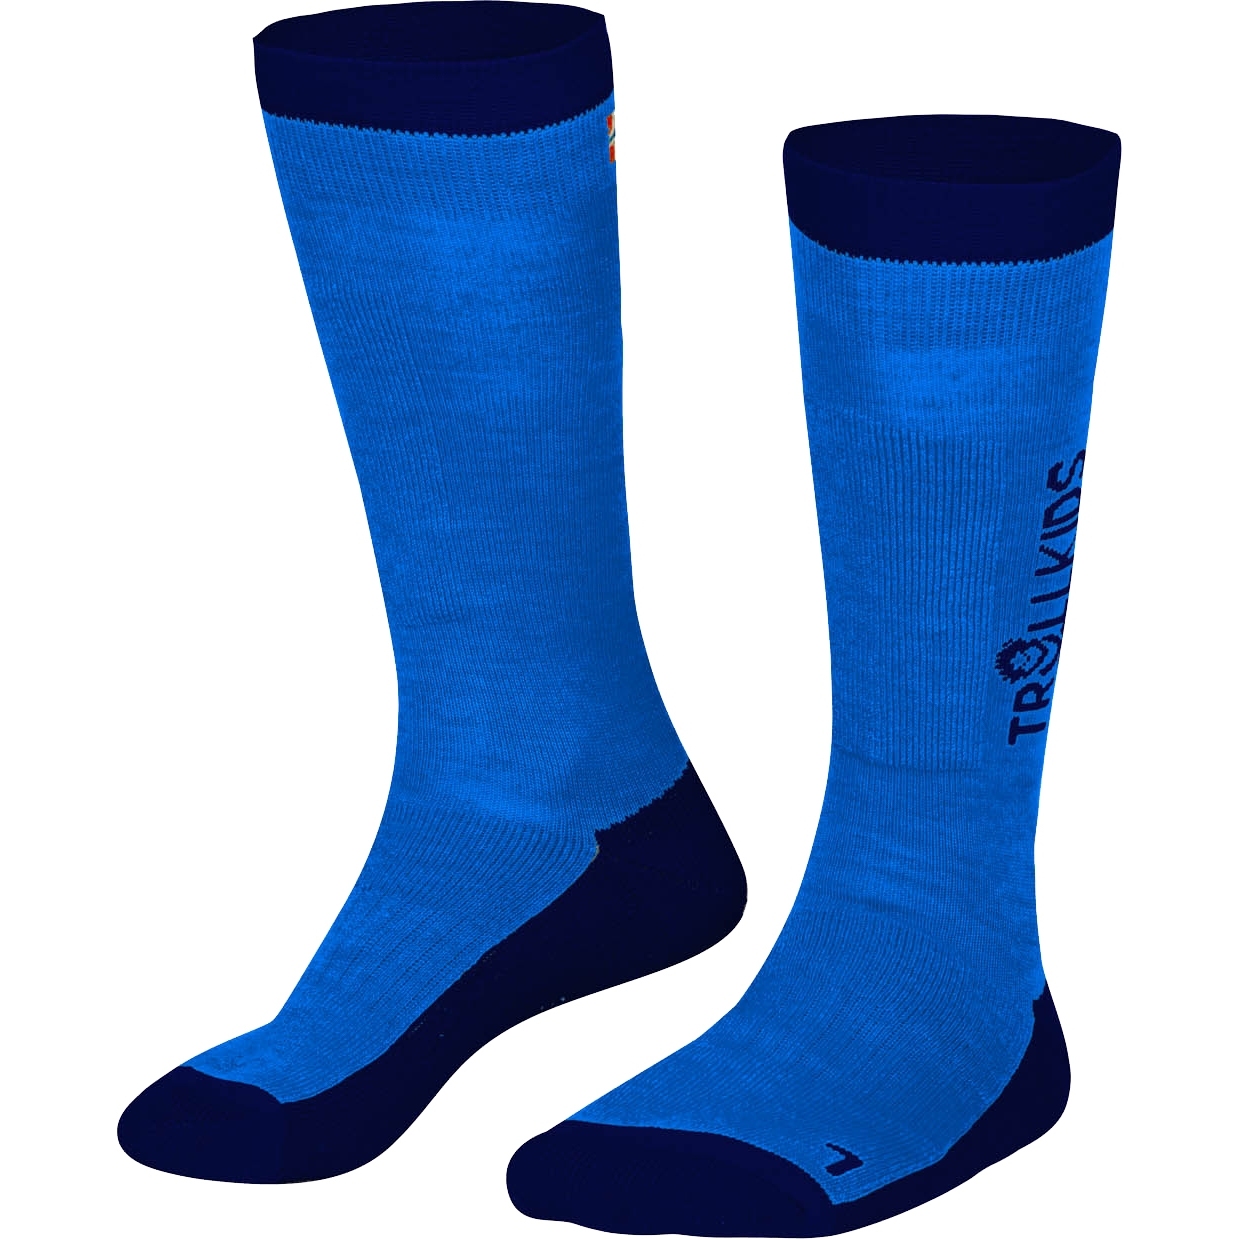 Productfoto van Trollkids Ski Long Cut Socks Kids - 2 Pair - Medium Blue/Navy